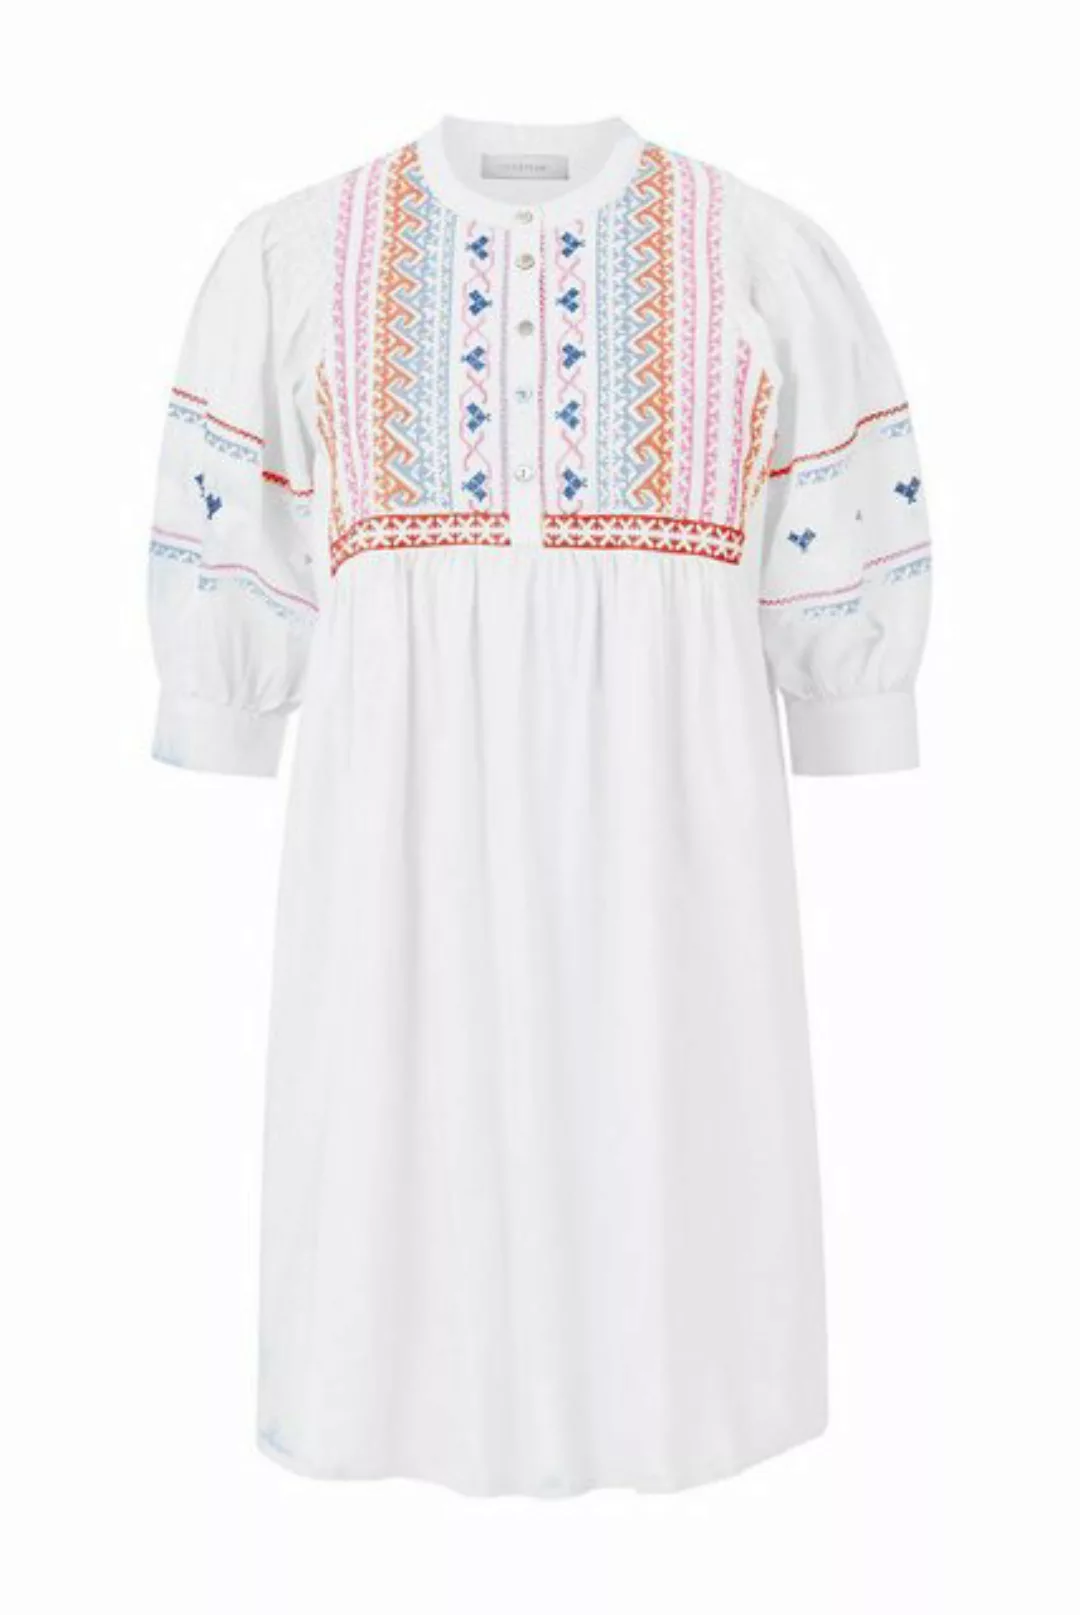 Rich & Royal Sommerkleid mini dress with embroidery organic, white günstig online kaufen